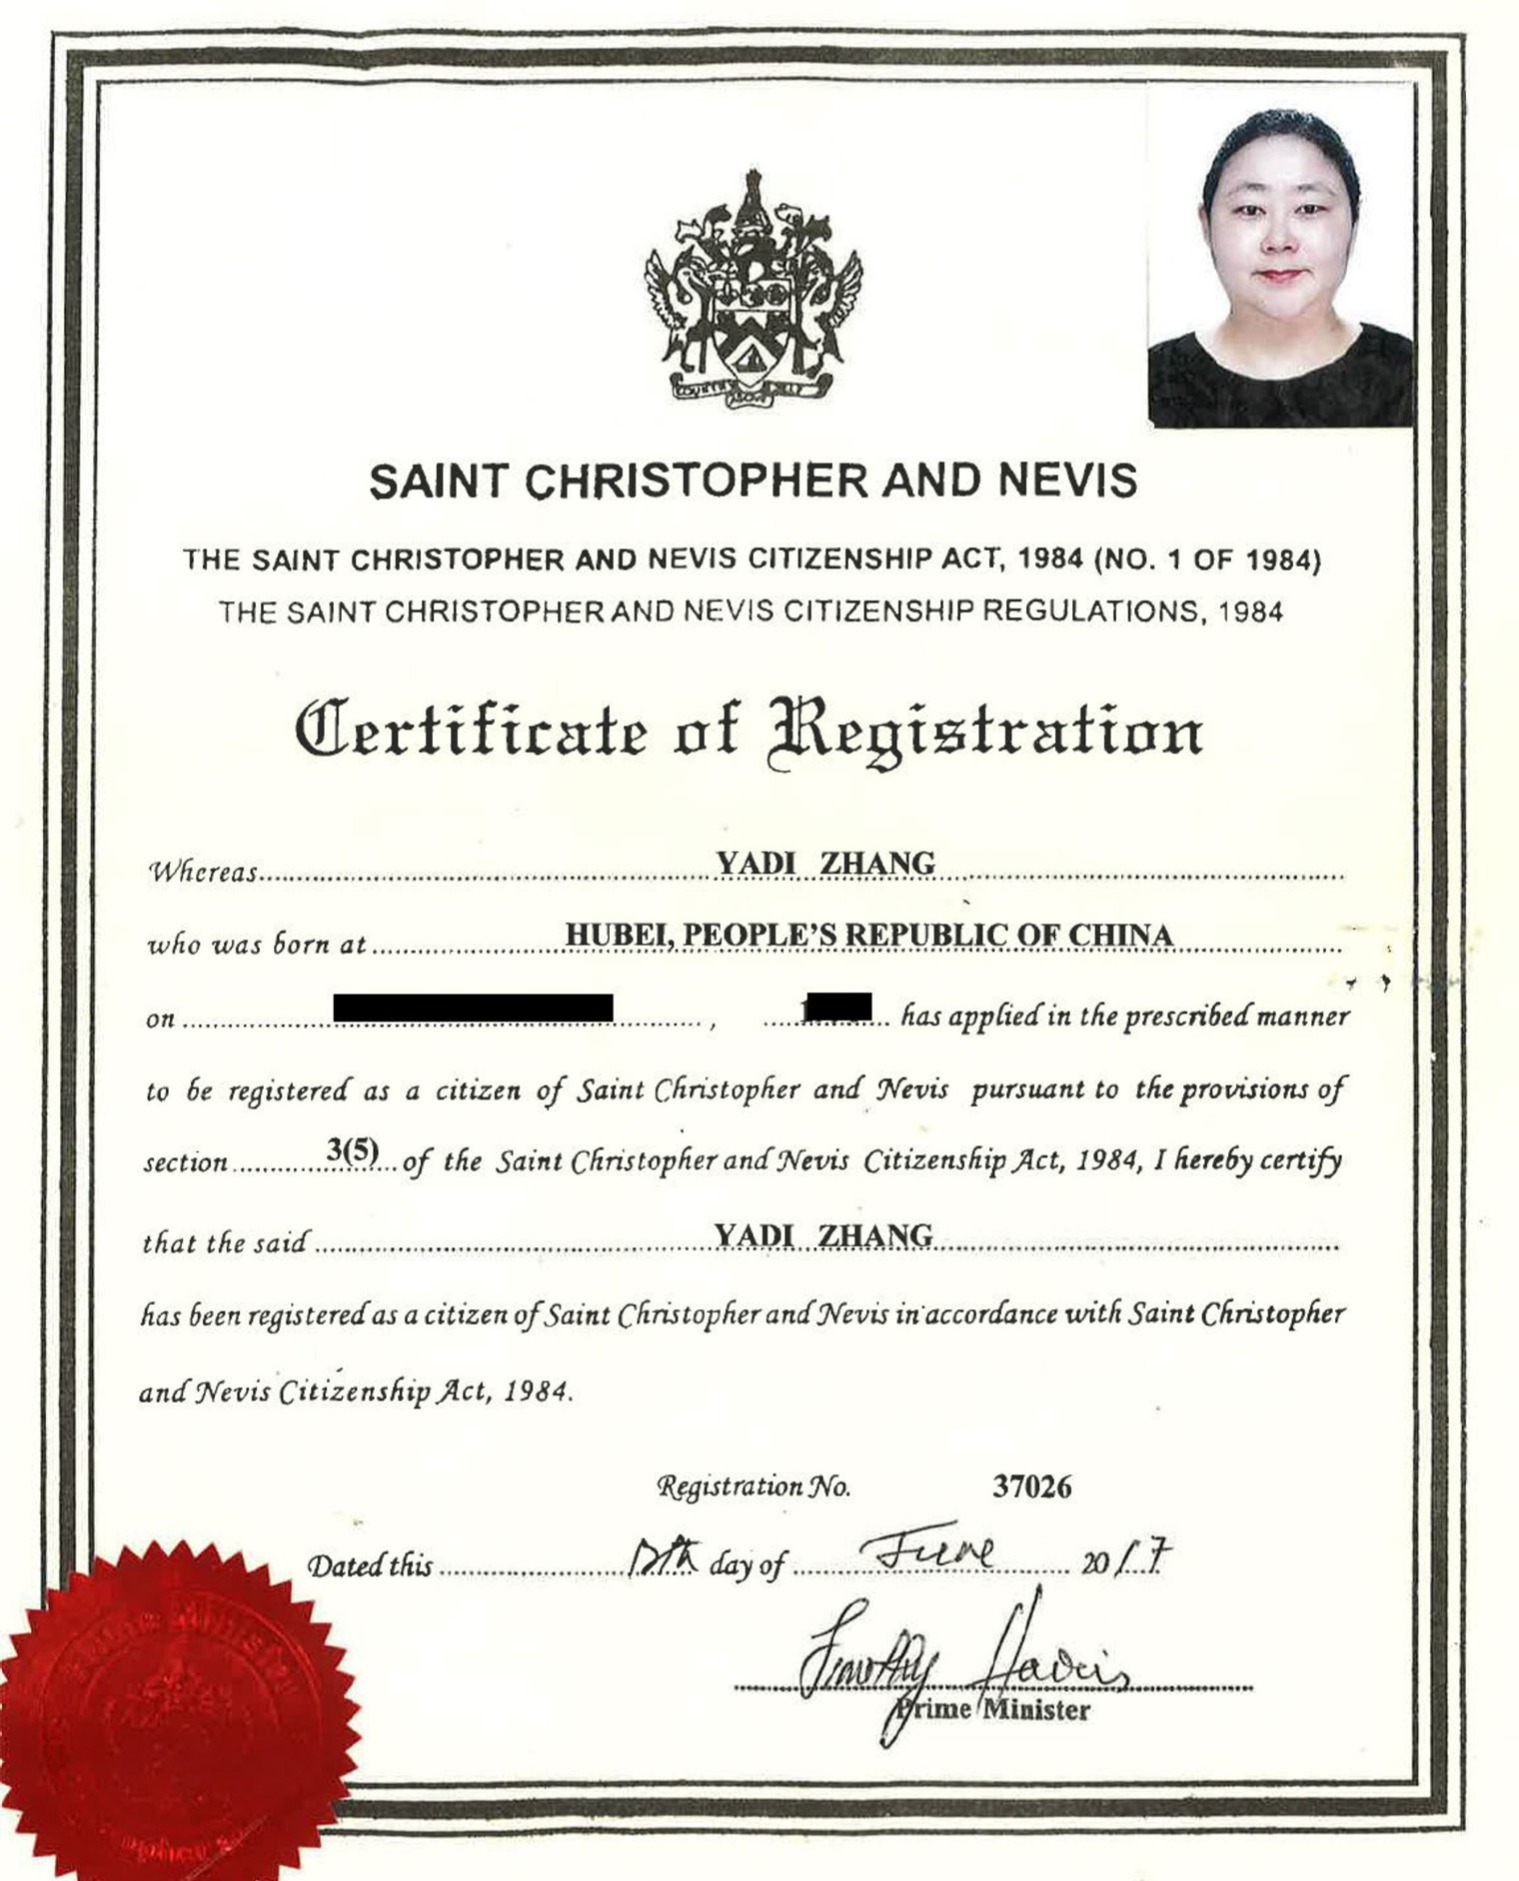 张雅迪注册为圣基茨和尼维斯公民